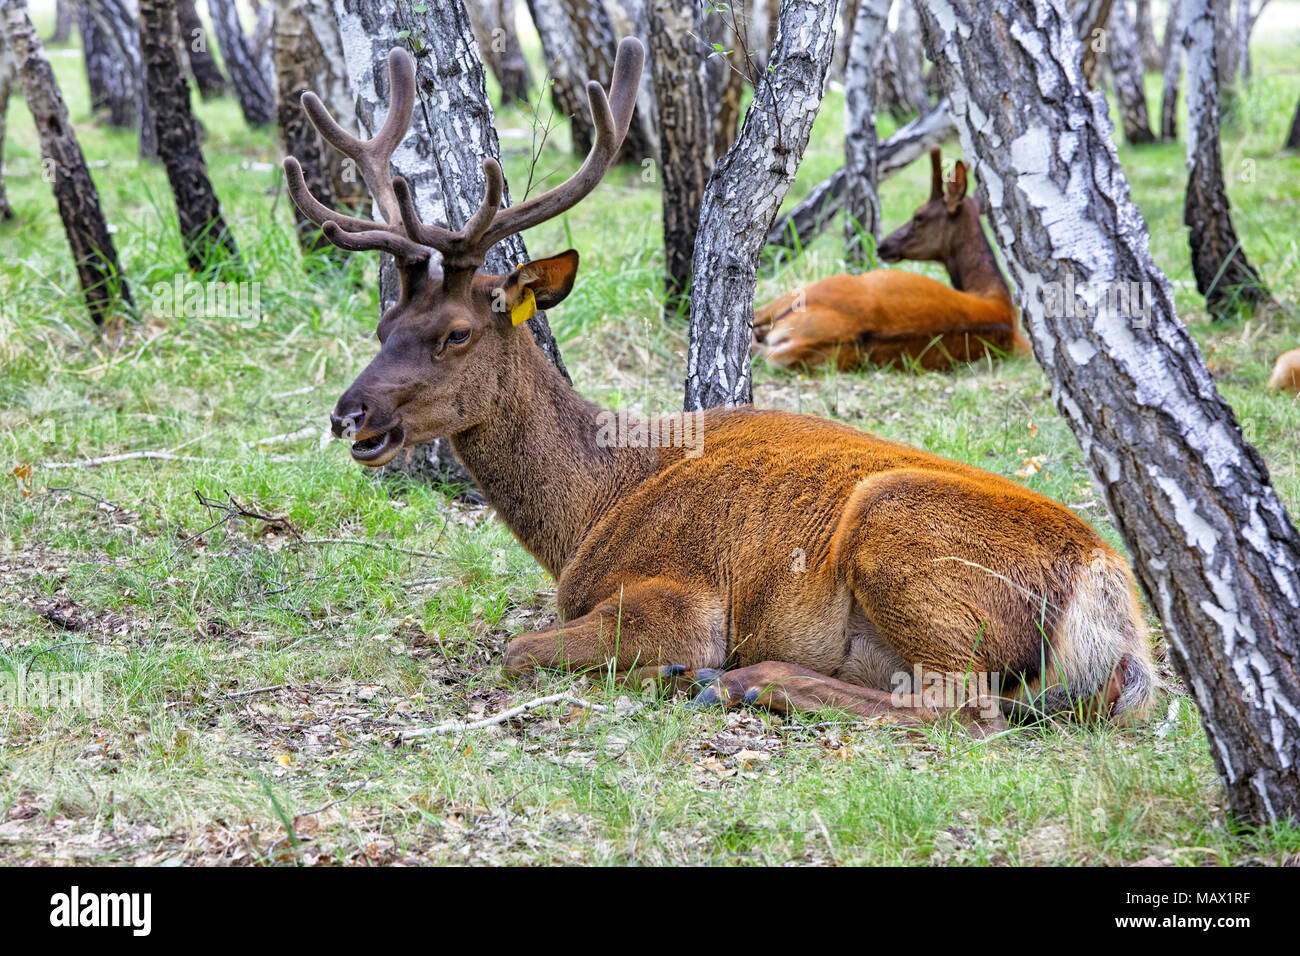 Deux cerfs - maral reposant dans un pâturage situé dans la forêt de bouleaux. Terrain agricole pour la culture de cerfs domestiqués en Sibérie Banque D'Images